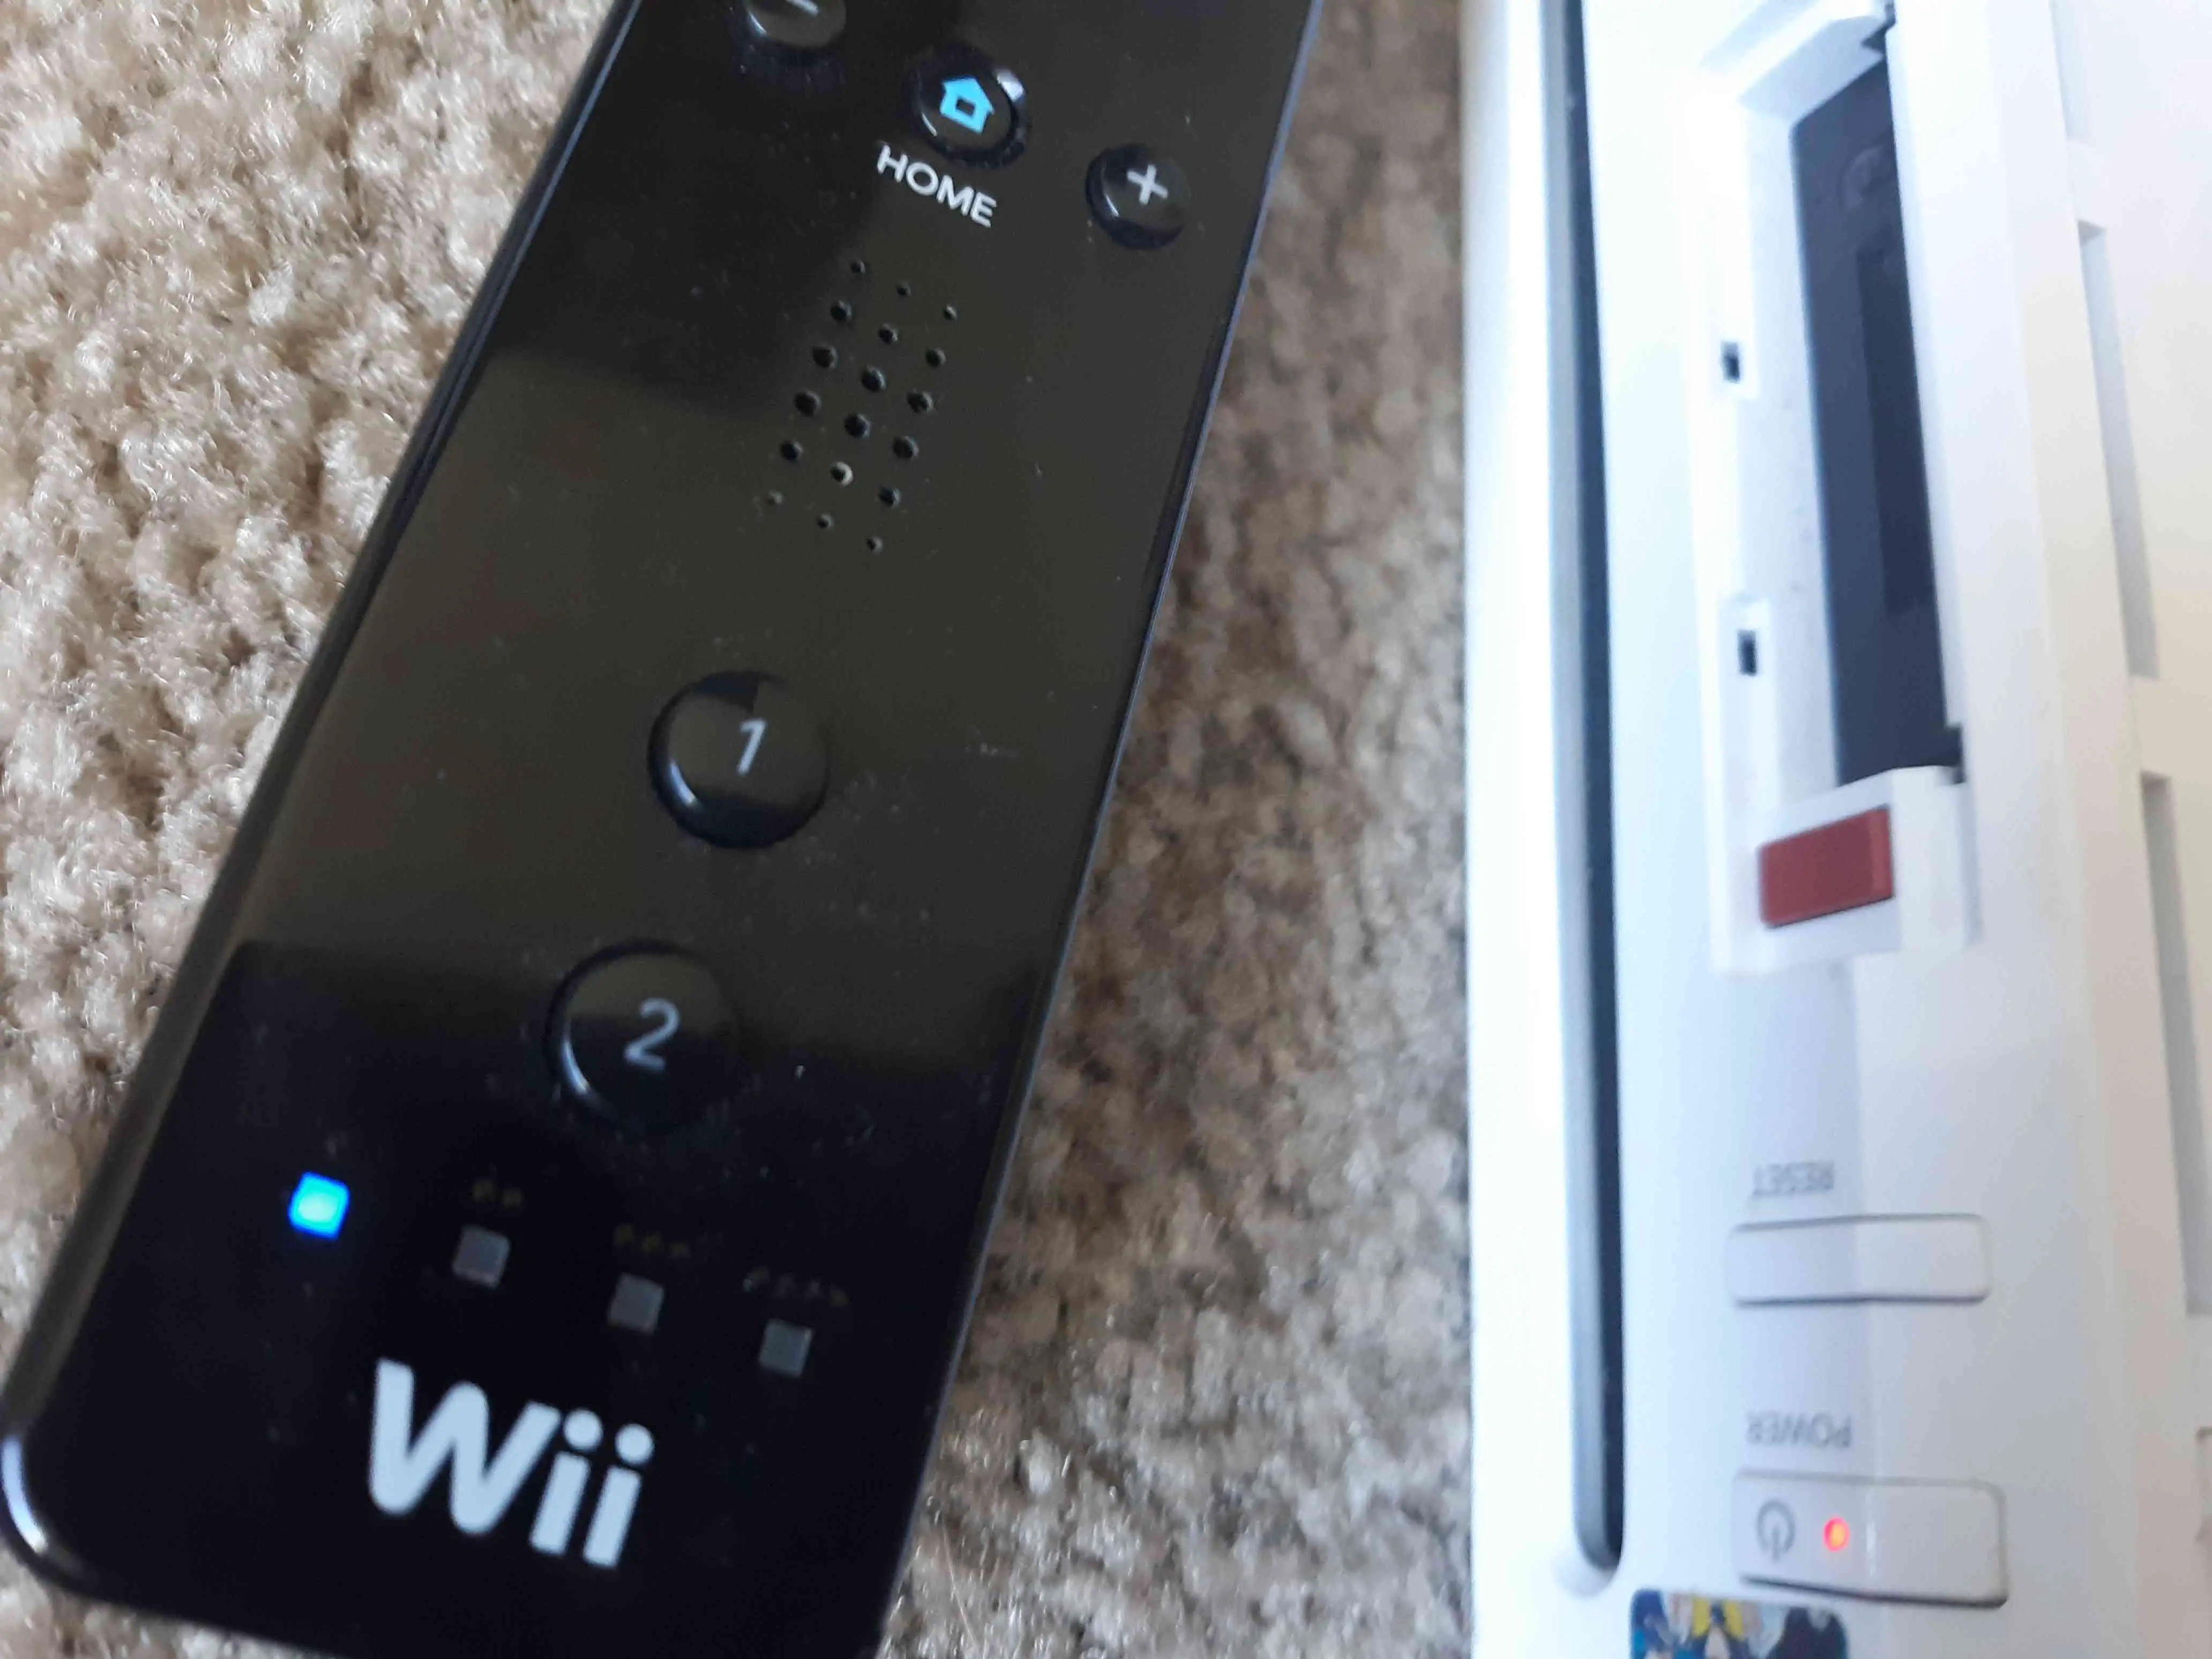 O LED no Wii remote está piscando próximo ao botão vermelho de sincronização no Wii.